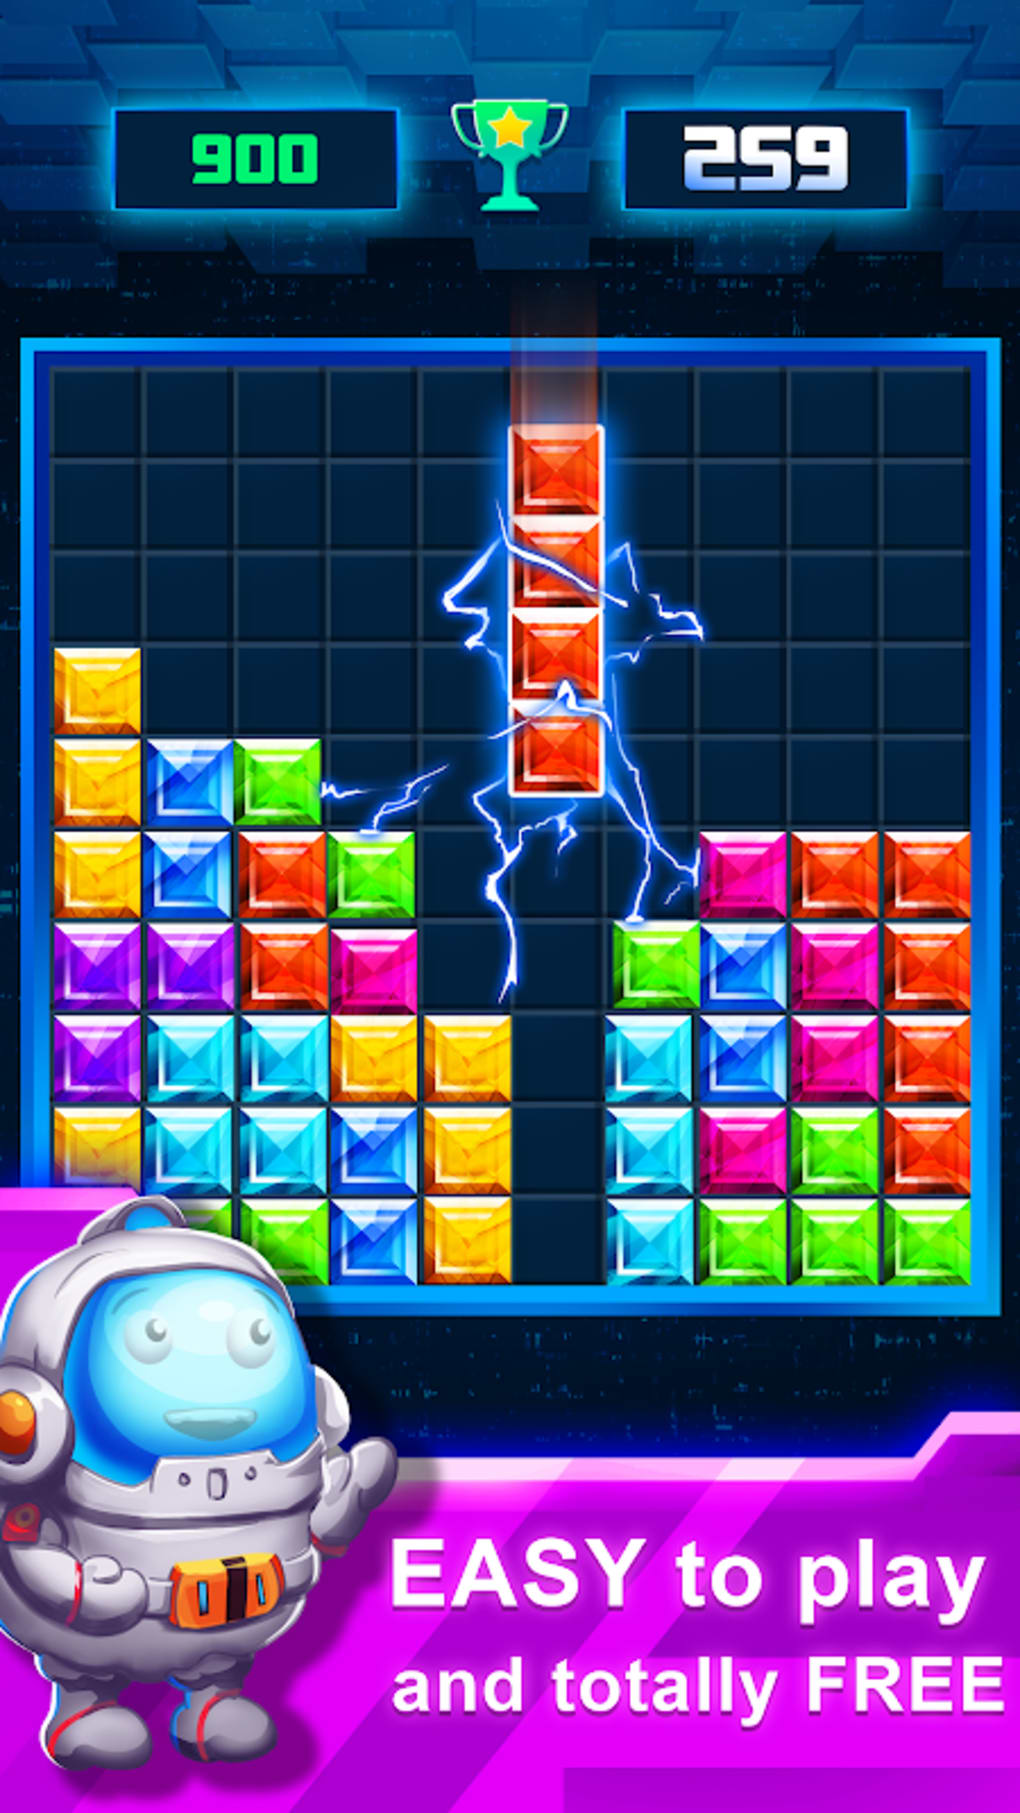 Block Puzzle - Classic Game